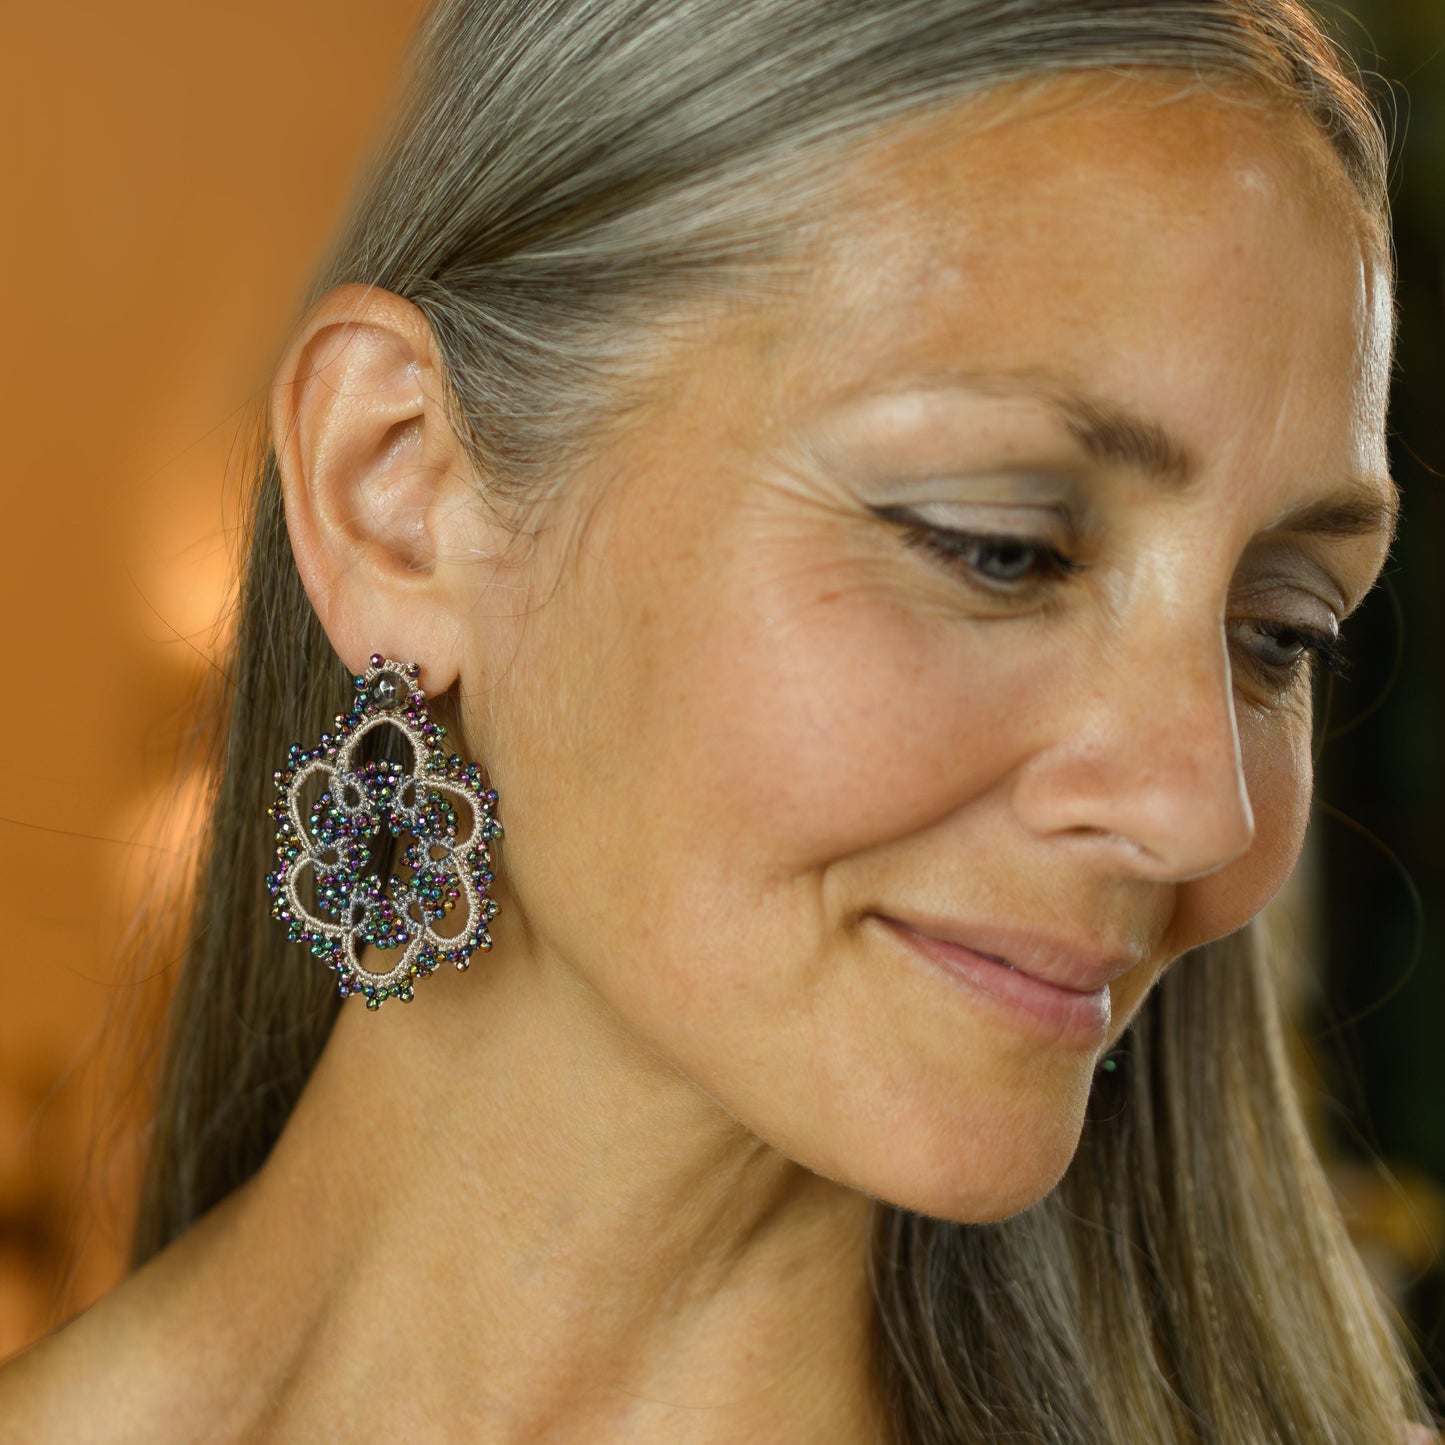 Flower bi-tone lace earrings, black silver